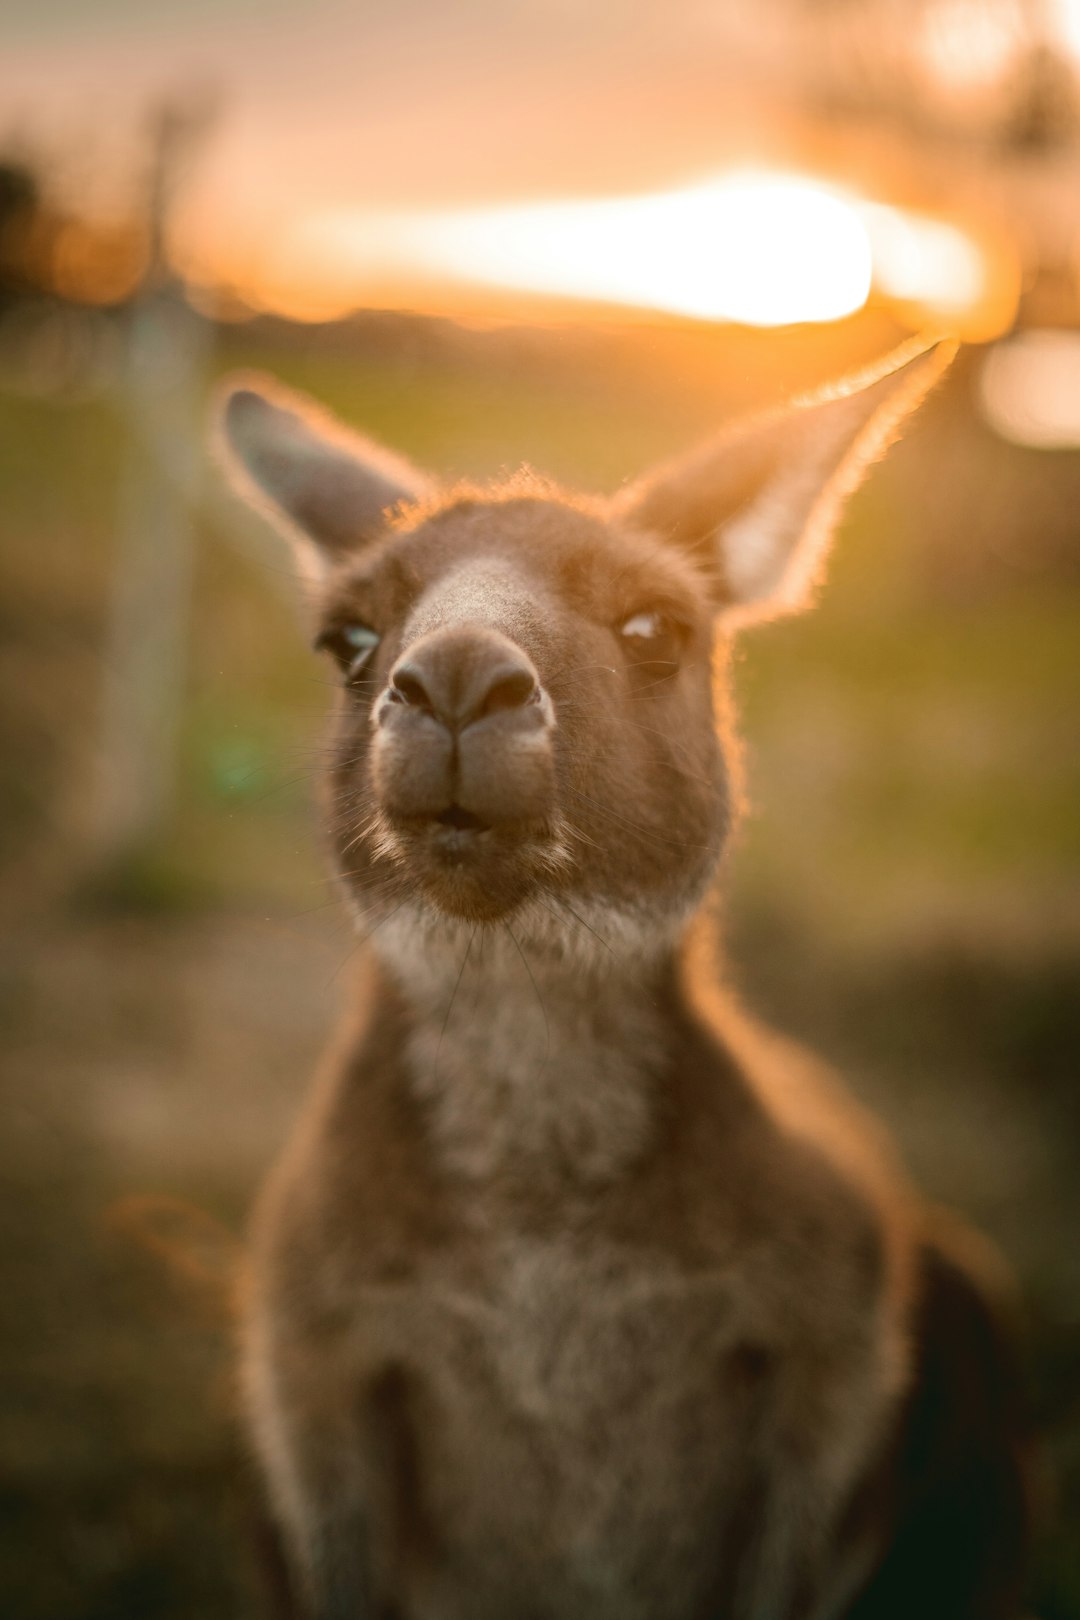  brown and white kangaroo in close up photography during daytime kangaroo